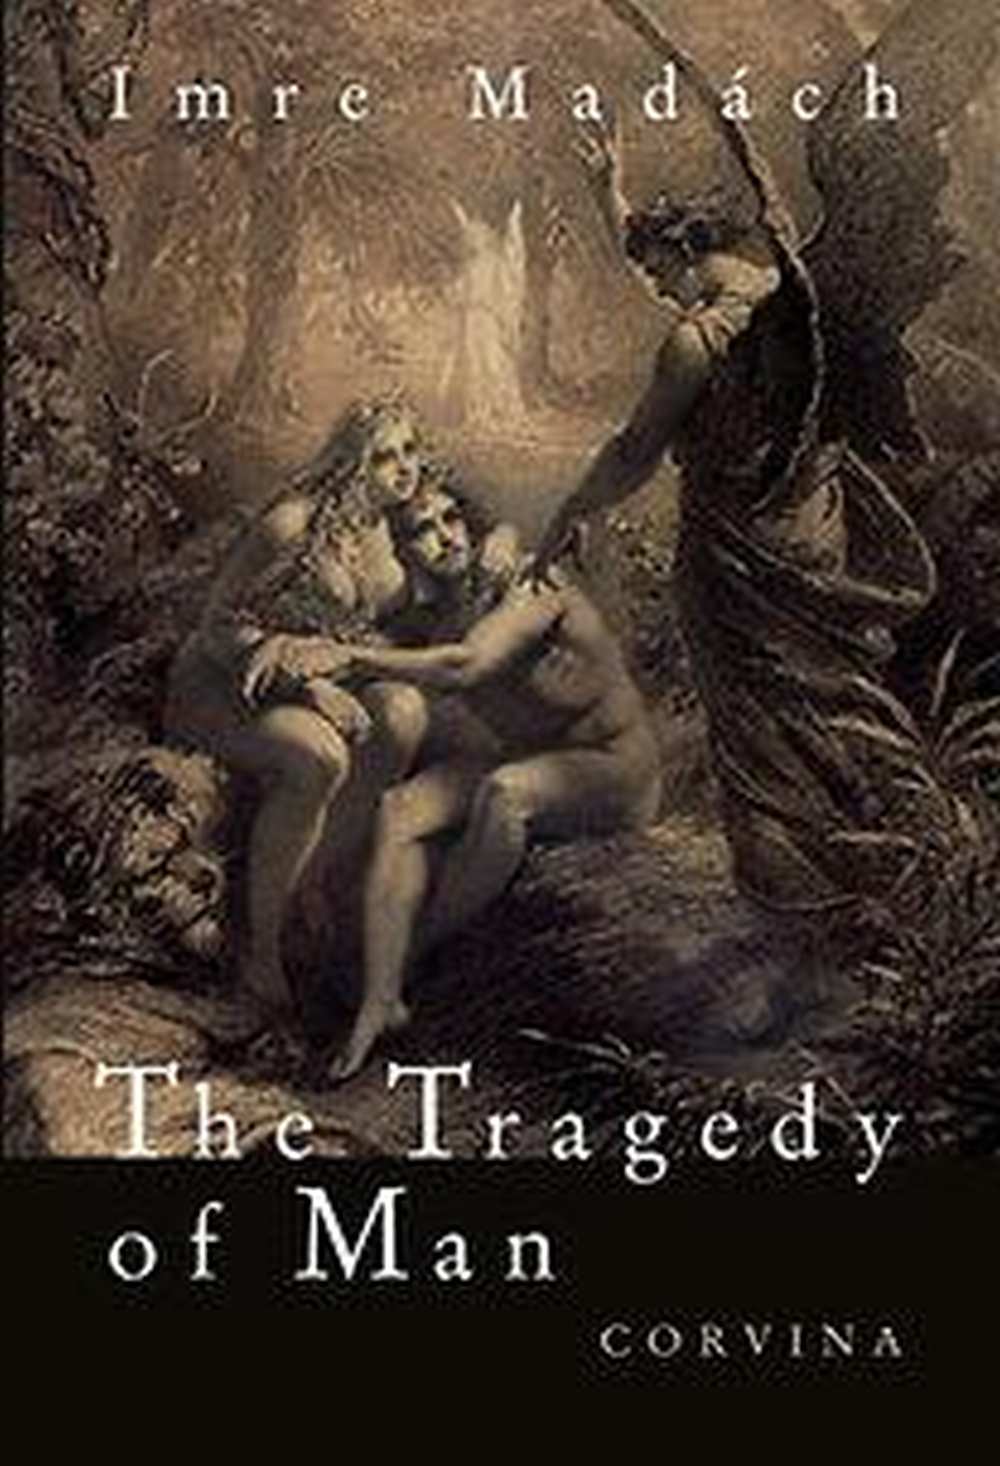 The Tragedy of Man (7. ed.), transl.: George Szirtes (Budapest: Corvina, 2018).Címlap. Szirtes fordítása a 8. angol nyelvű változat, először 1988-ban jelent meg.